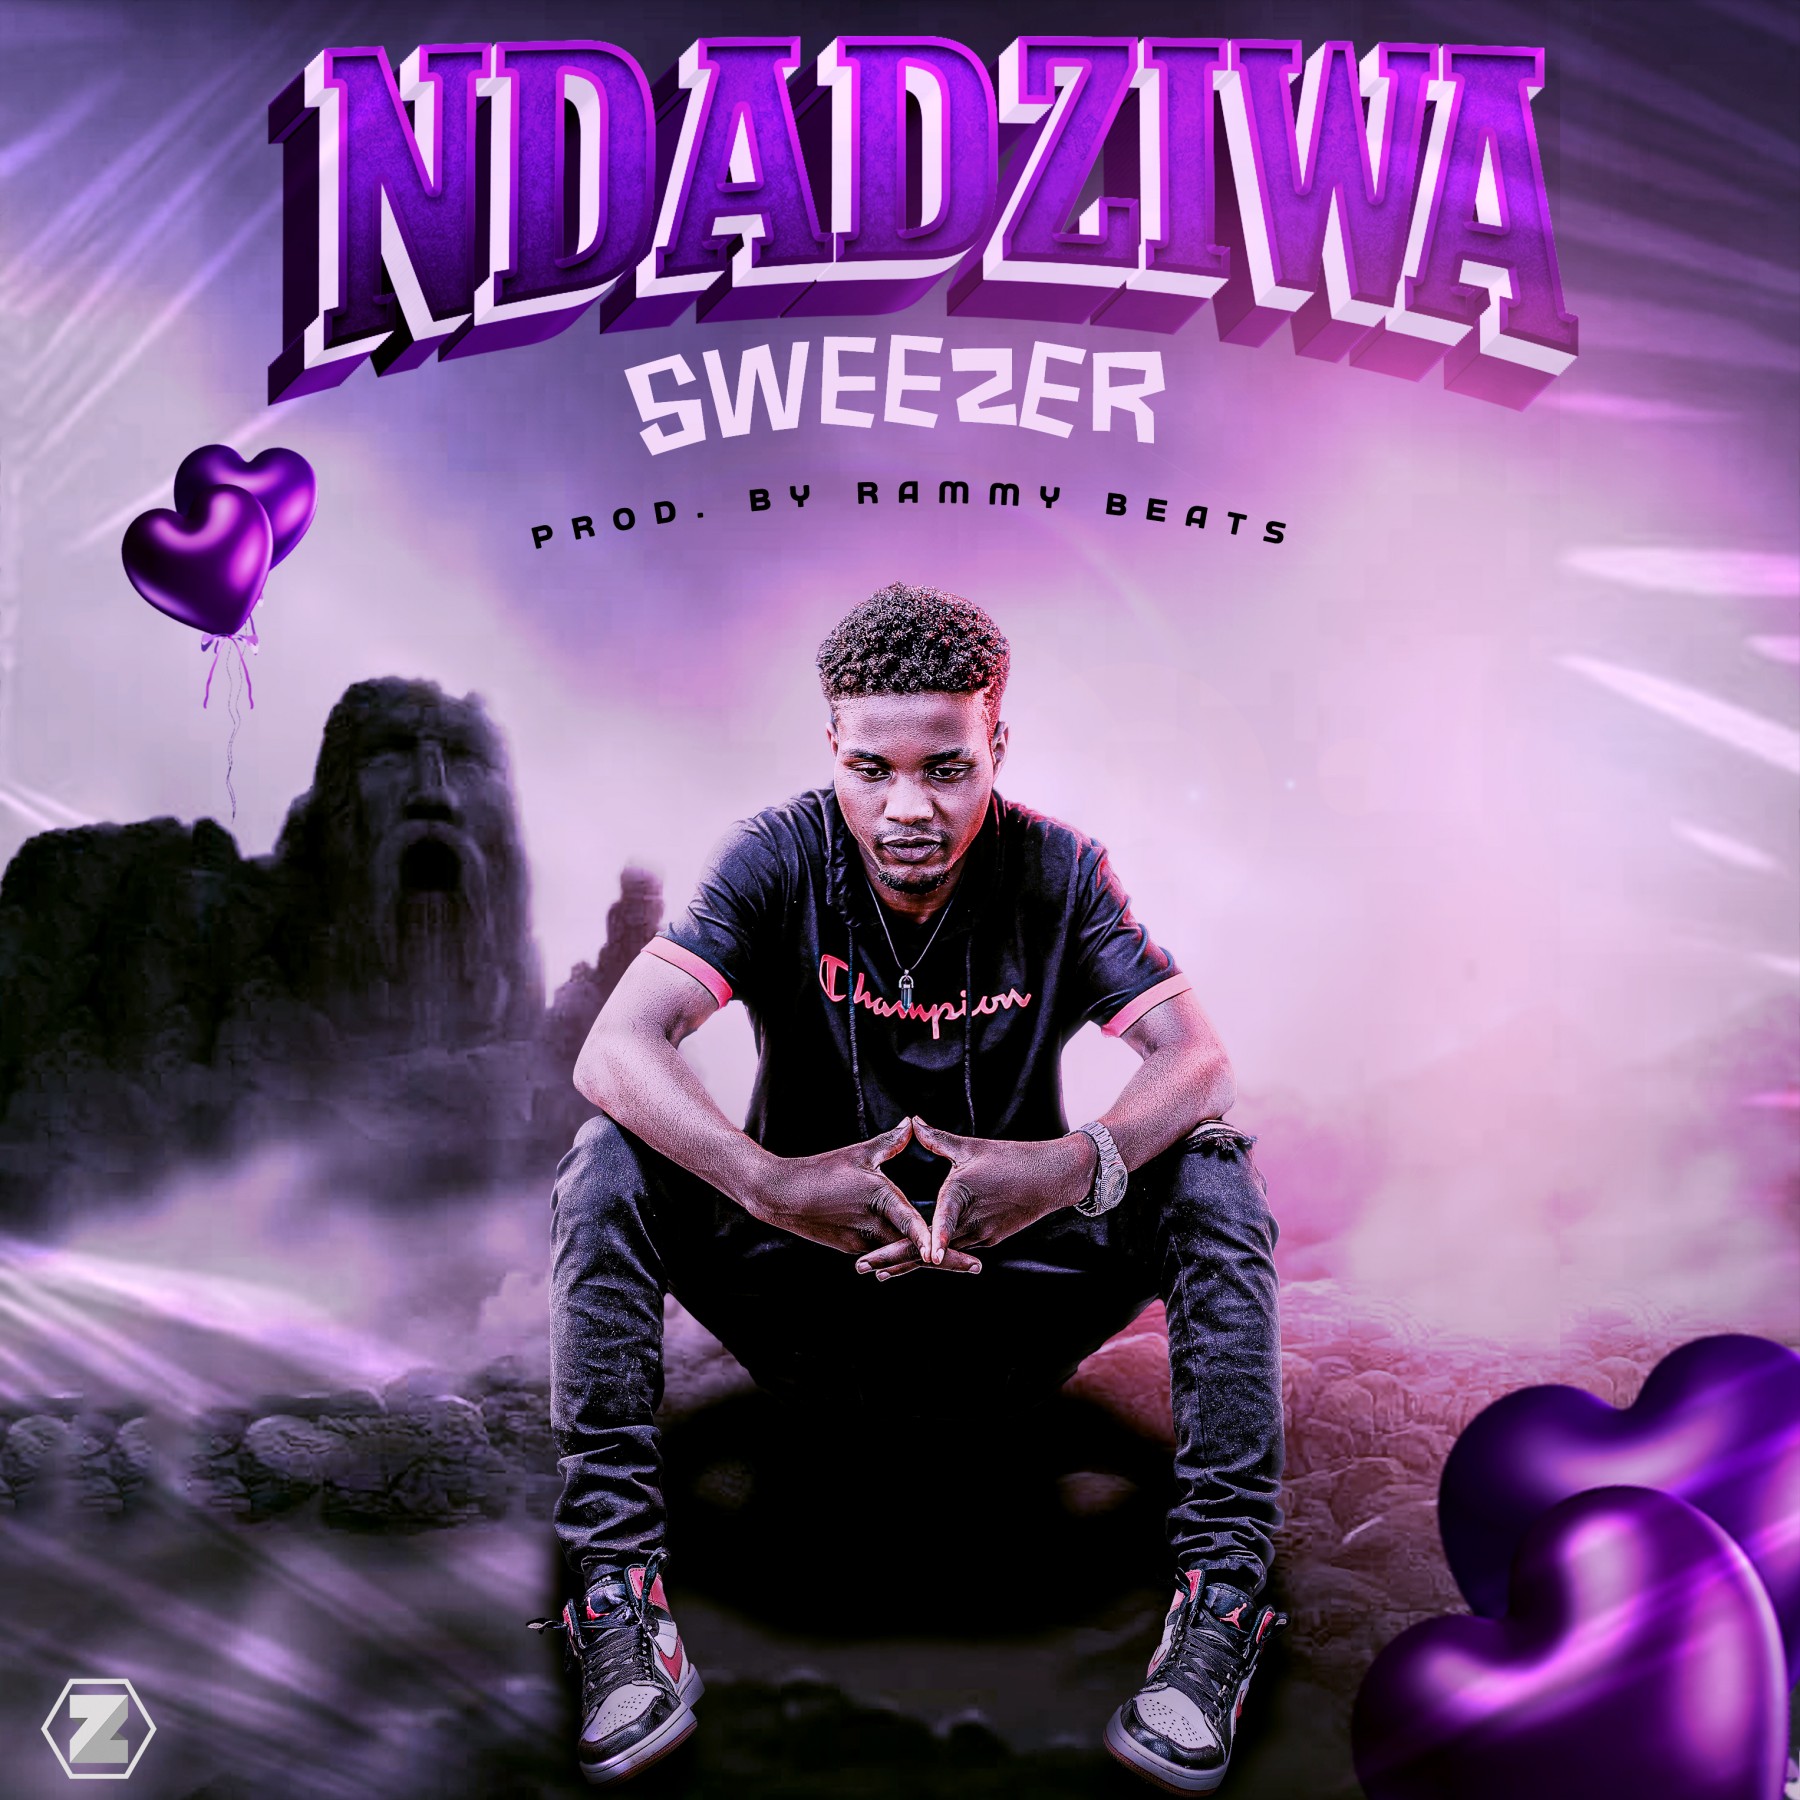 Sweezer-Ndadziwa